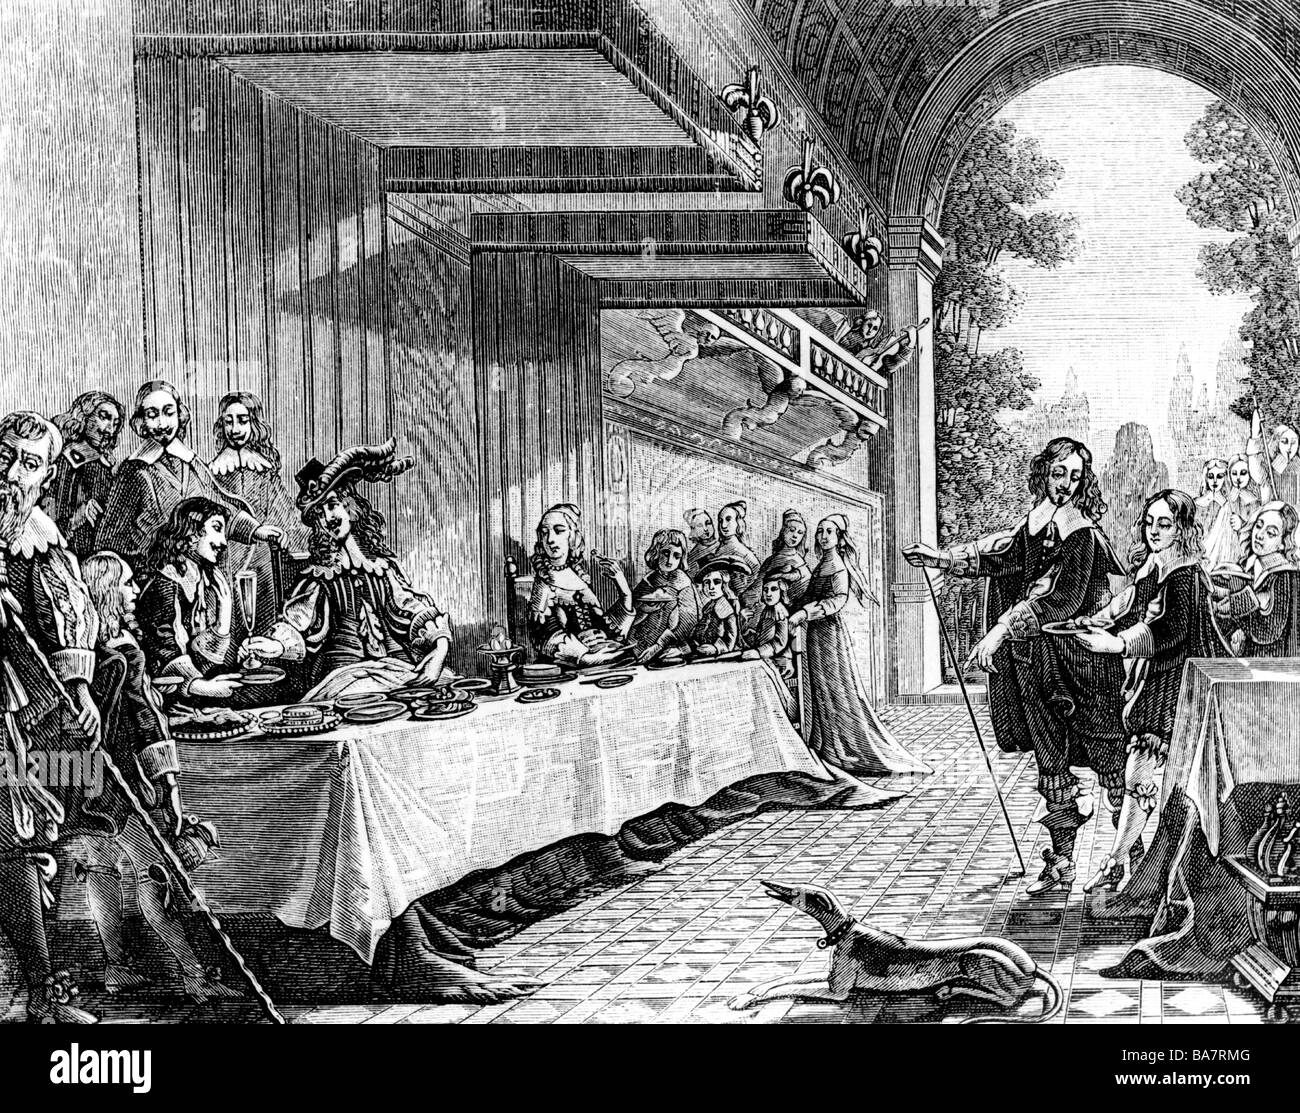 Louis XIII, 27.9.1601 - 14.5.1643, Roi de France 14.5.1610 - 14.5.1643, fête du Roi, gravure sur bois, début du 17e siècle, l'artiste a le droit d'auteur , de ne pas être effacé Banque D'Images